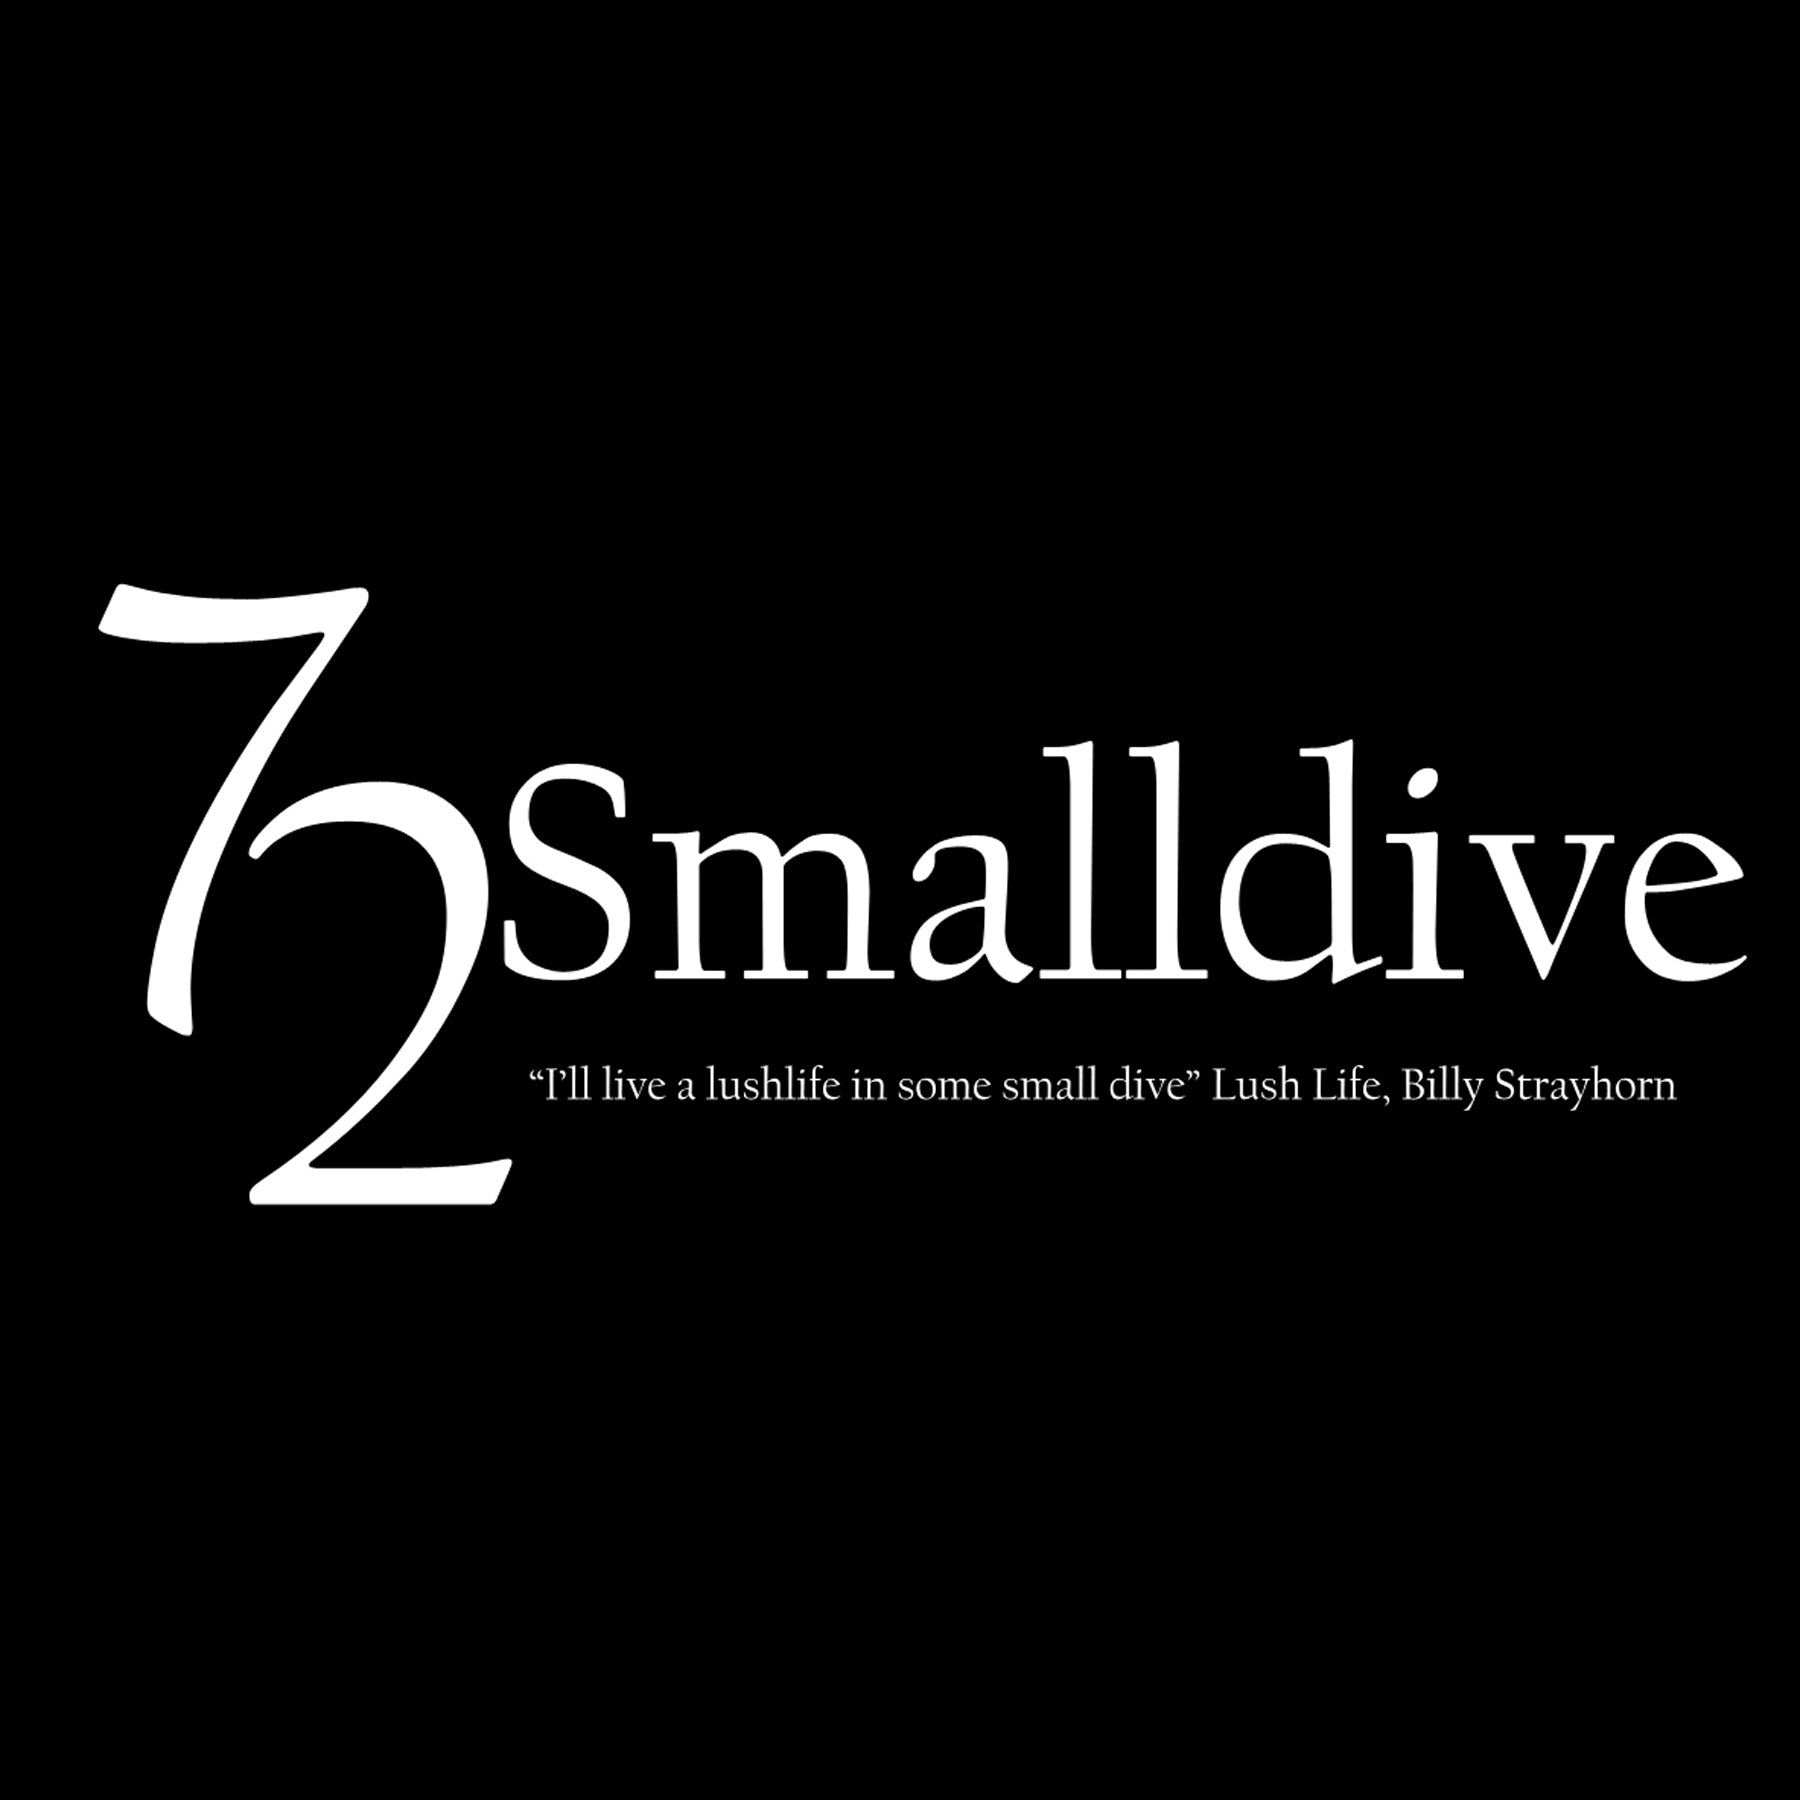 72 Smalldive